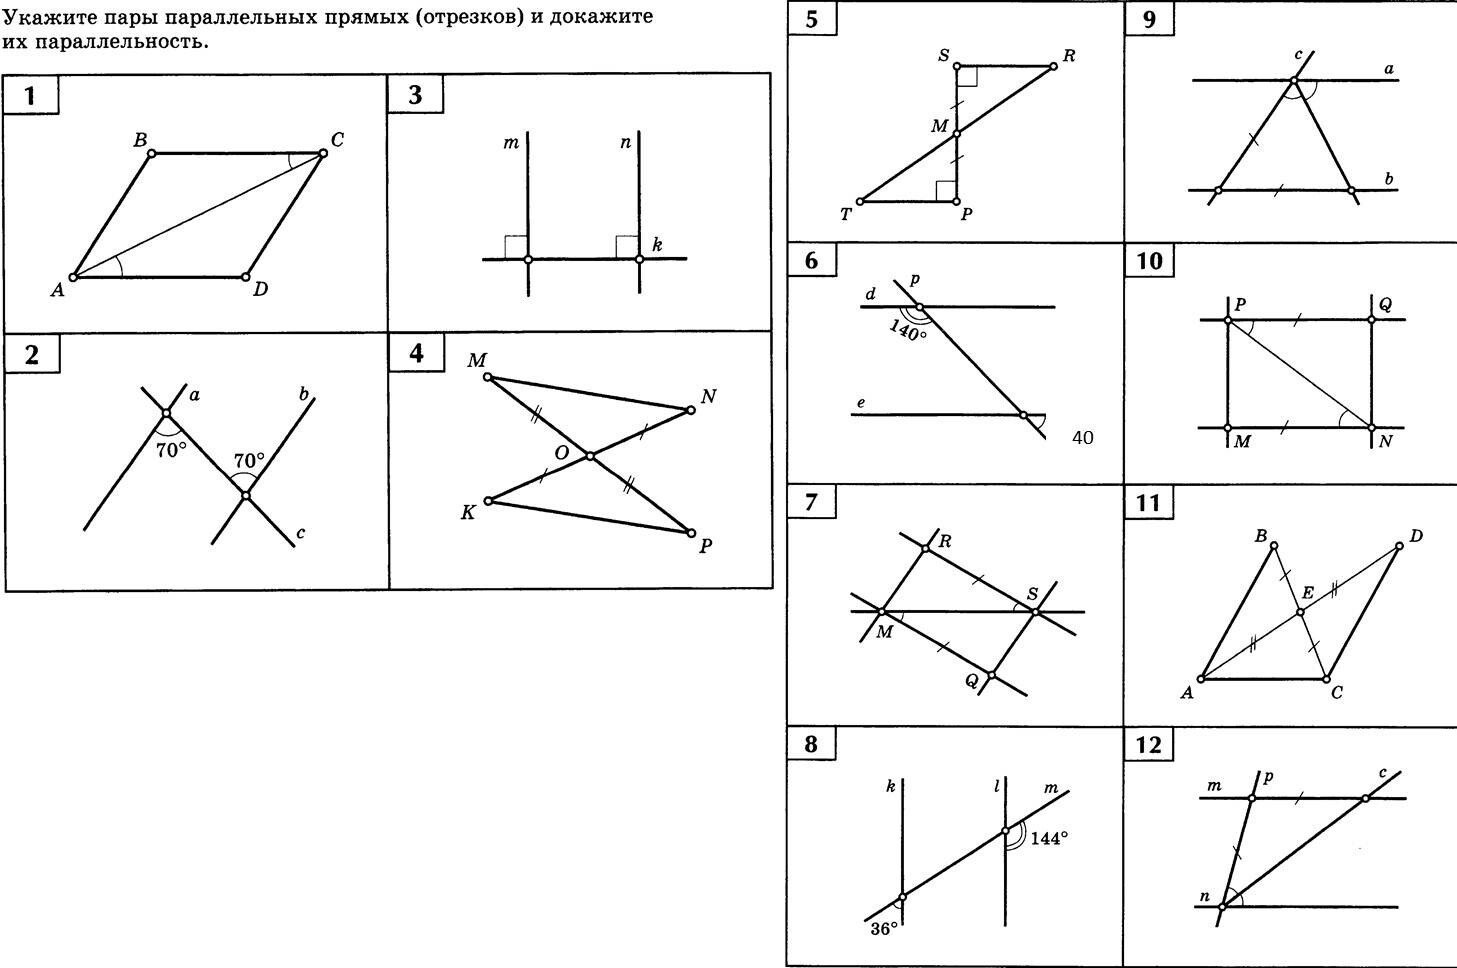 Задачи на чертежах 7 9 классы. Укажите пары параллельных прямых и отрезков. Укажите пары параллельных прямых и докажите их. Укажите пары параллельных прямых отрезков и докажите. Укажите пара паралельных отресков.